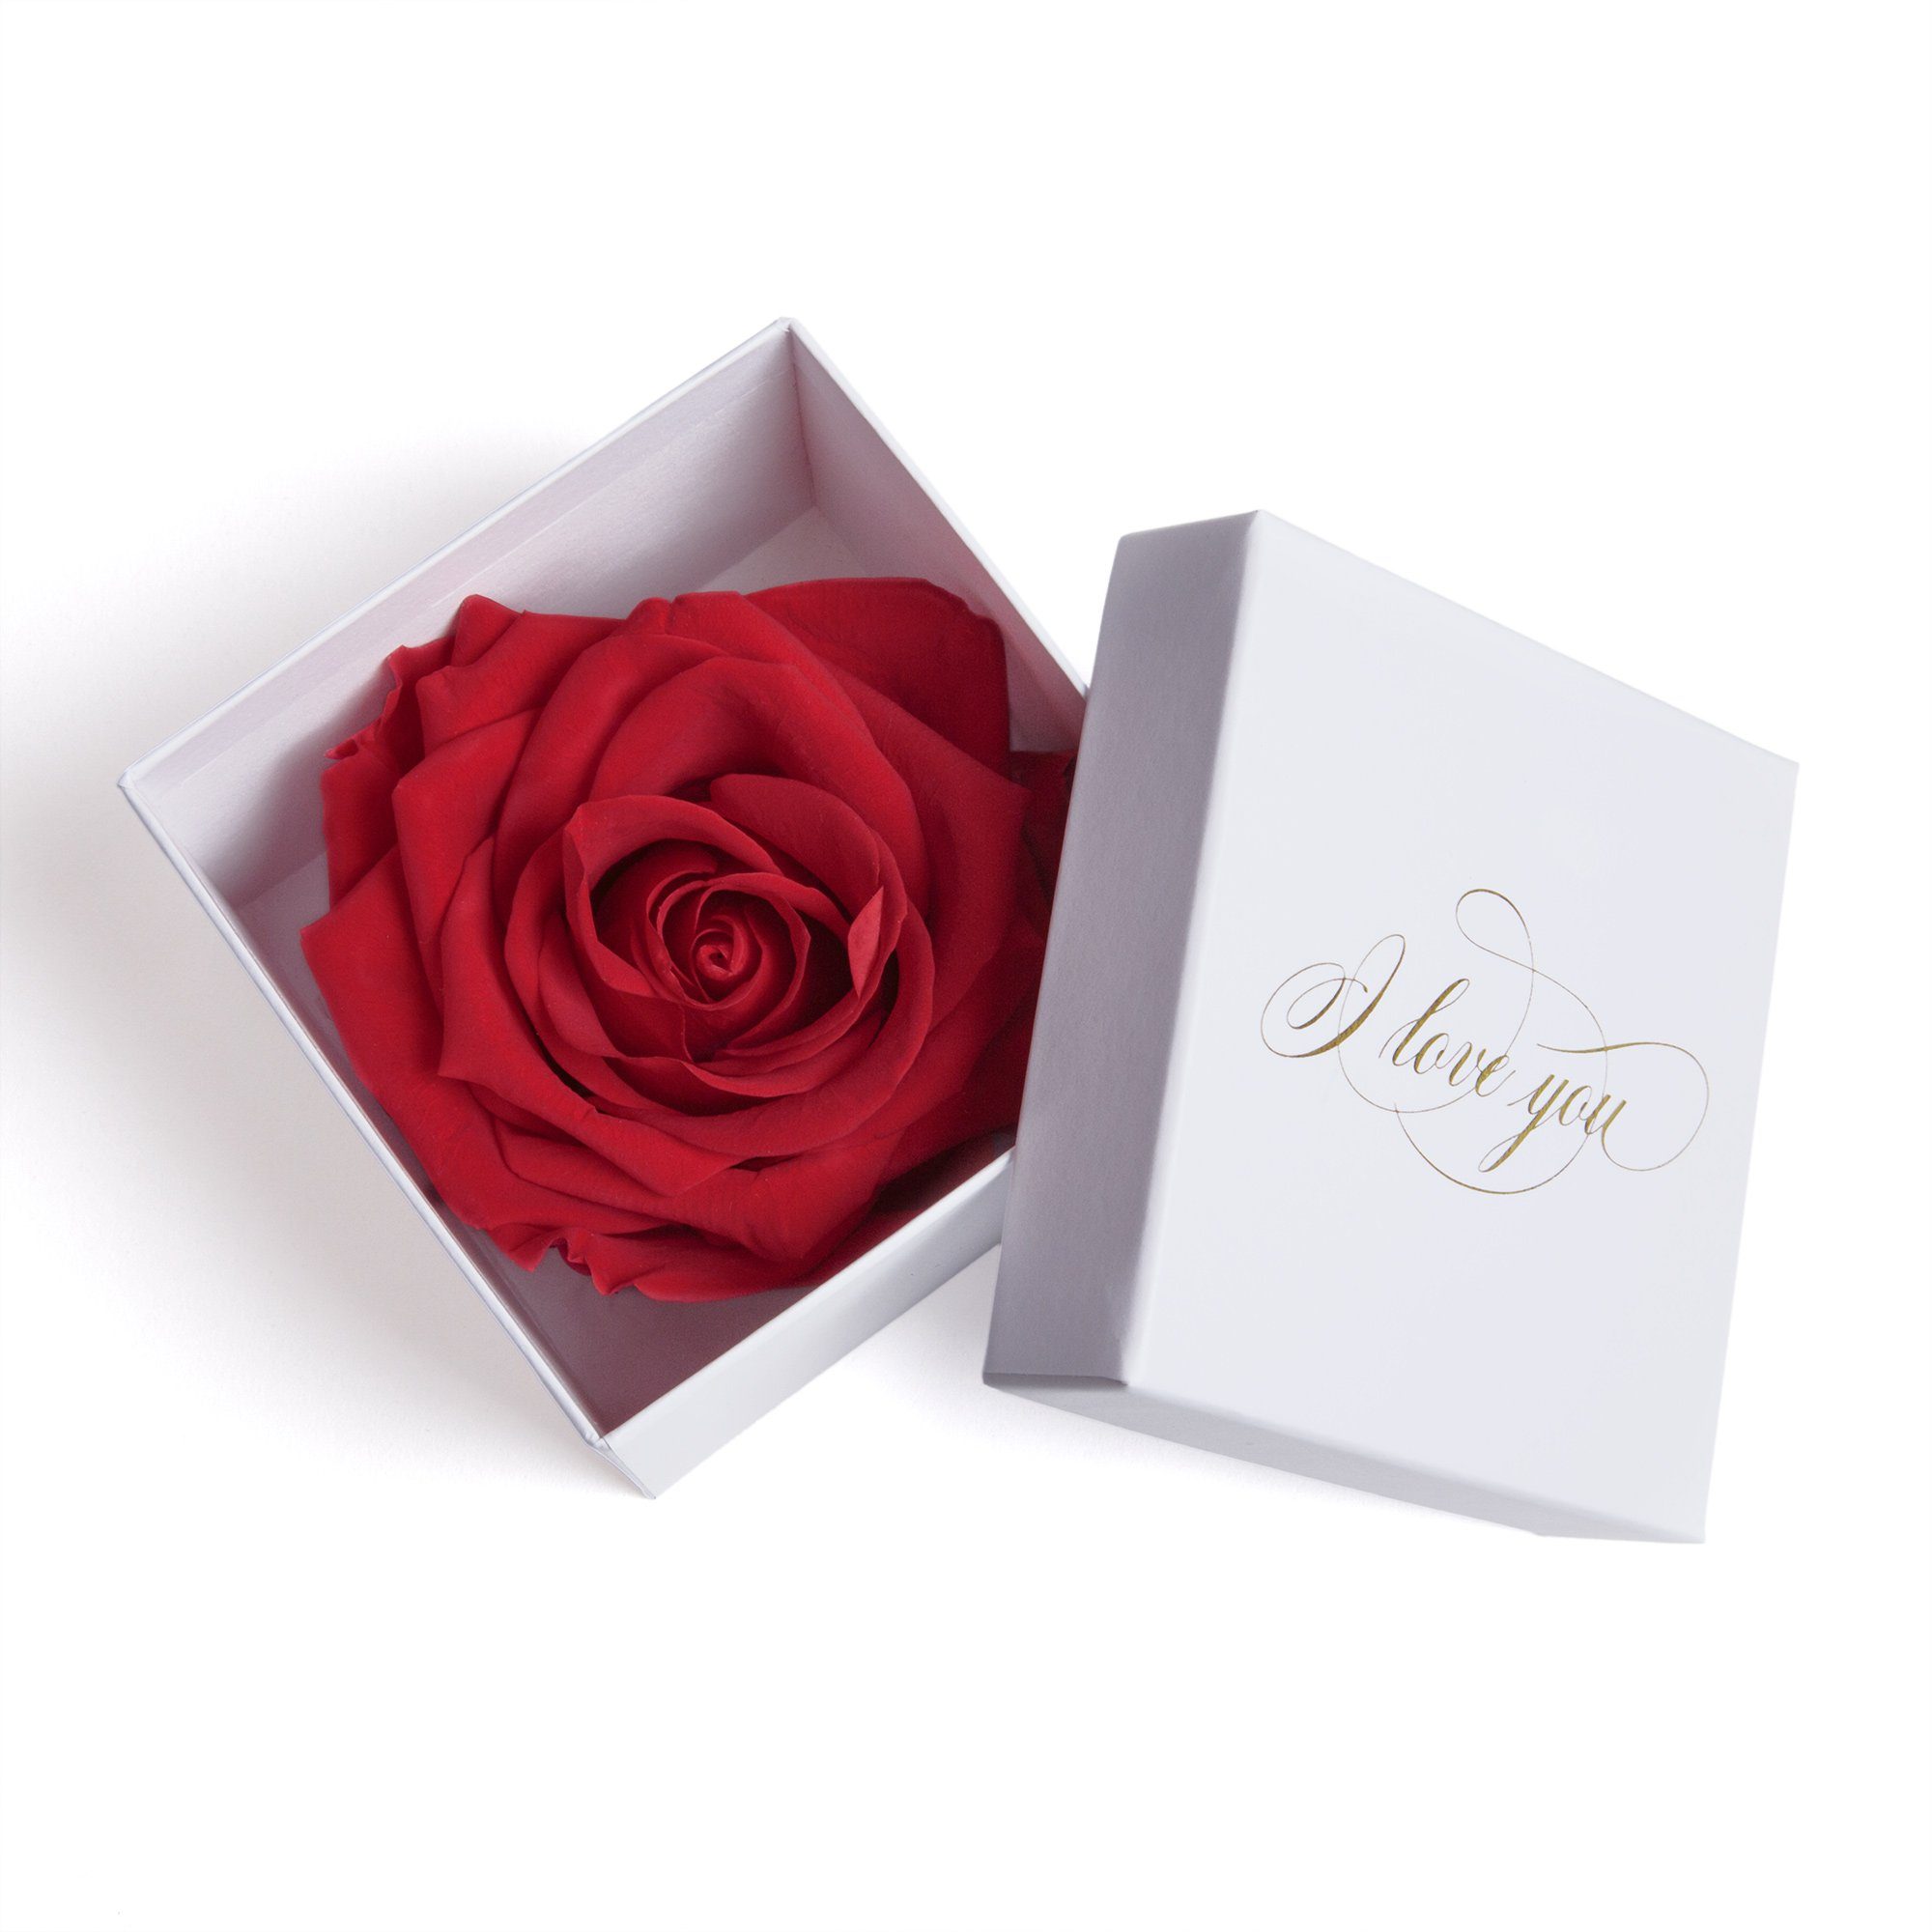 Kunstblume Infinity Rose in Box weiß I LOVE YOU Geschenk Frauen Liebesbeweis Valentinstag Rose, ROSEMARIE SCHULZ Heidelberg, Höhe 6 cm, Rose haltbar bis zu 3 Jahre rot